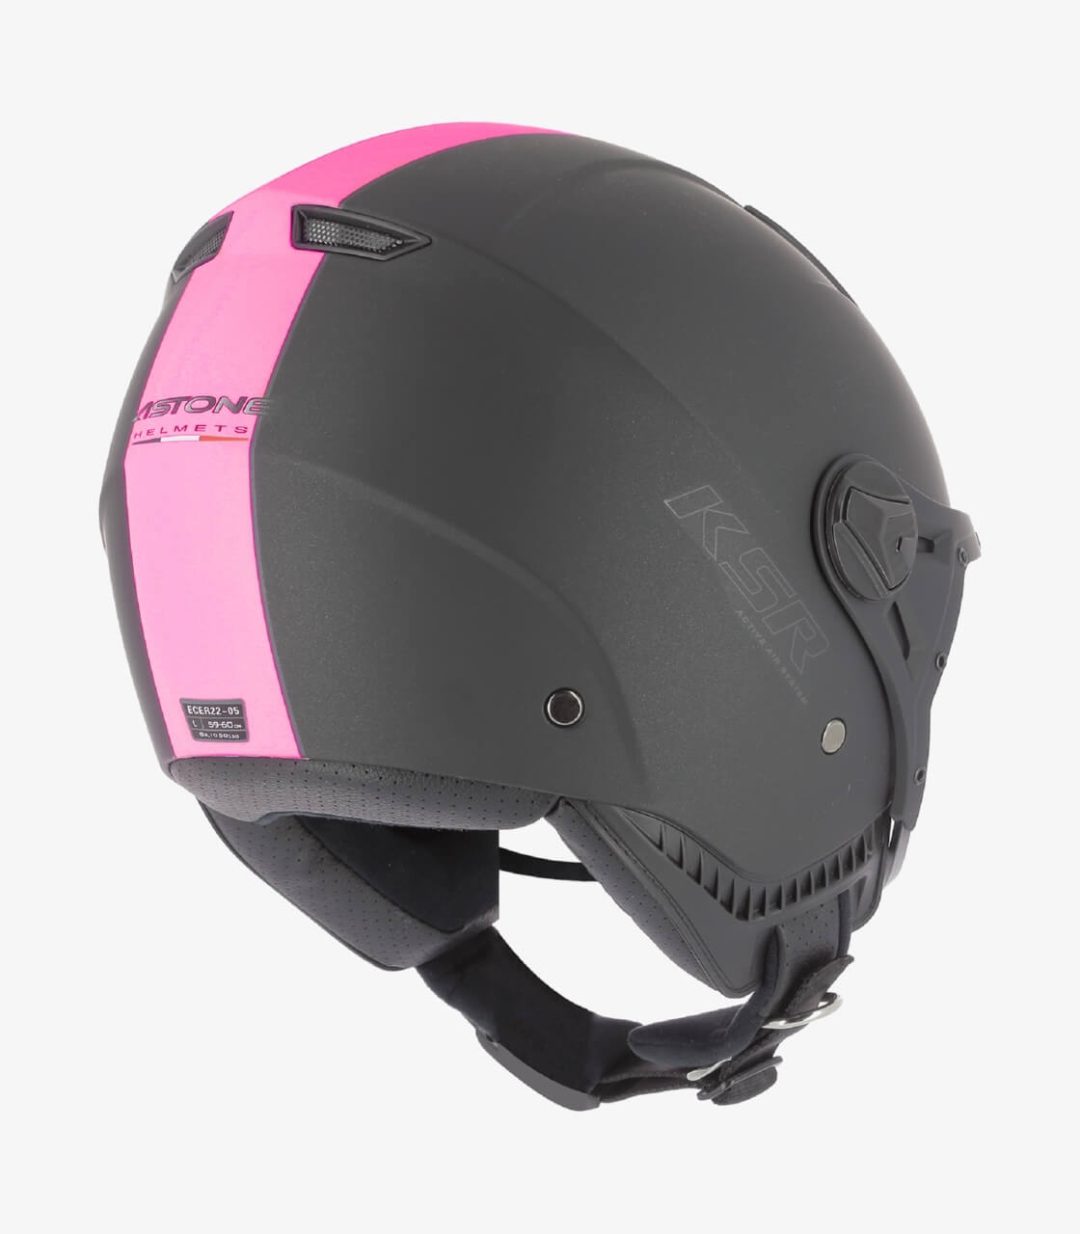 astone-ksr-2-matt-black-pink-open-face-helmet-ksr2g-mbp (4)